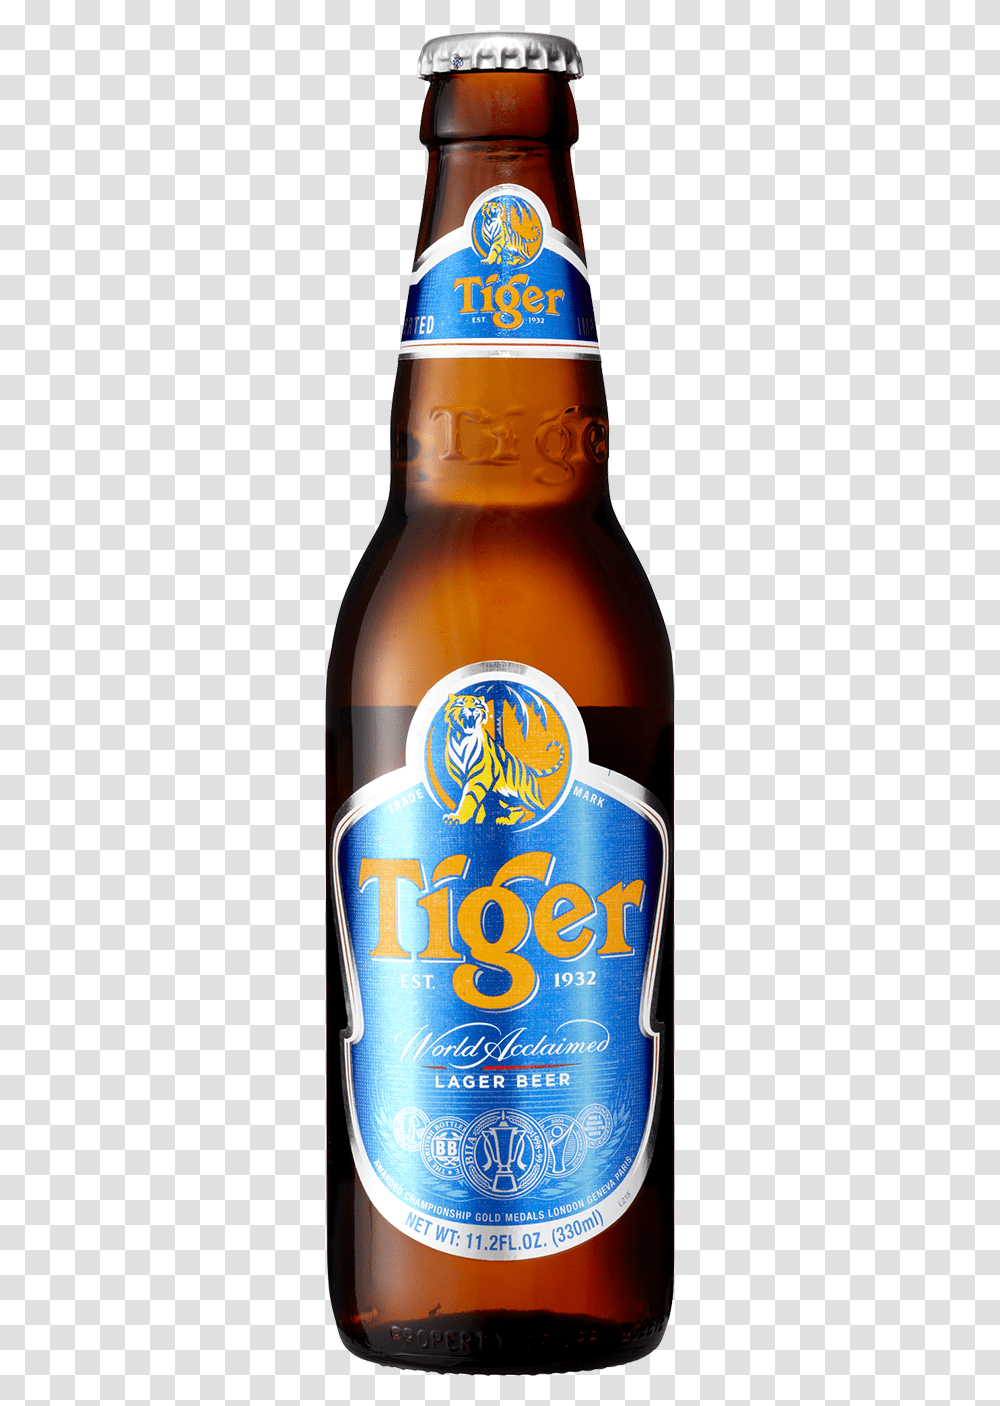 Tiger Beer Bottle Download Tiger Beer Bottle, Alcohol, Beverage, Drink, Lager Transparent Png